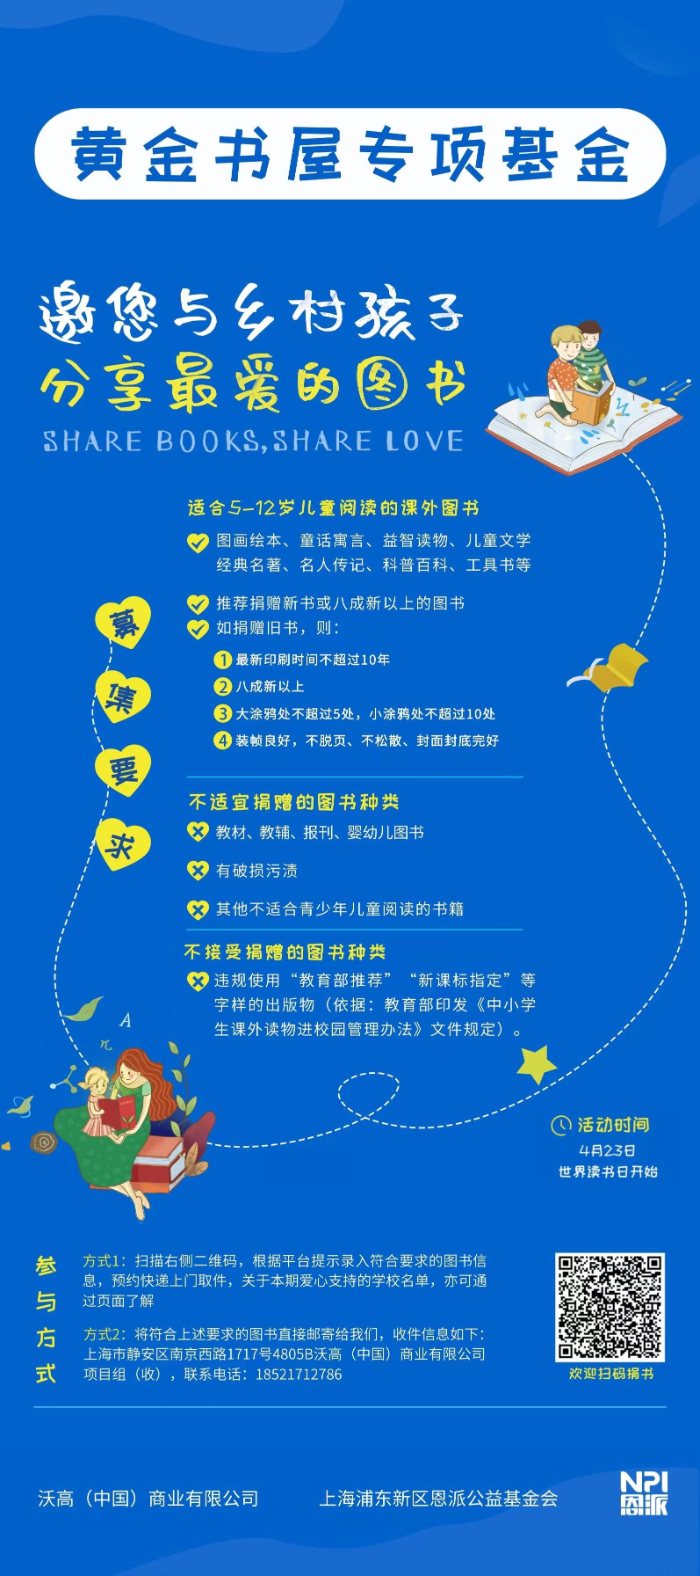 沃高中国携手恩派基金会共建“黄金书屋” 与乡村孩子一起快乐阅读